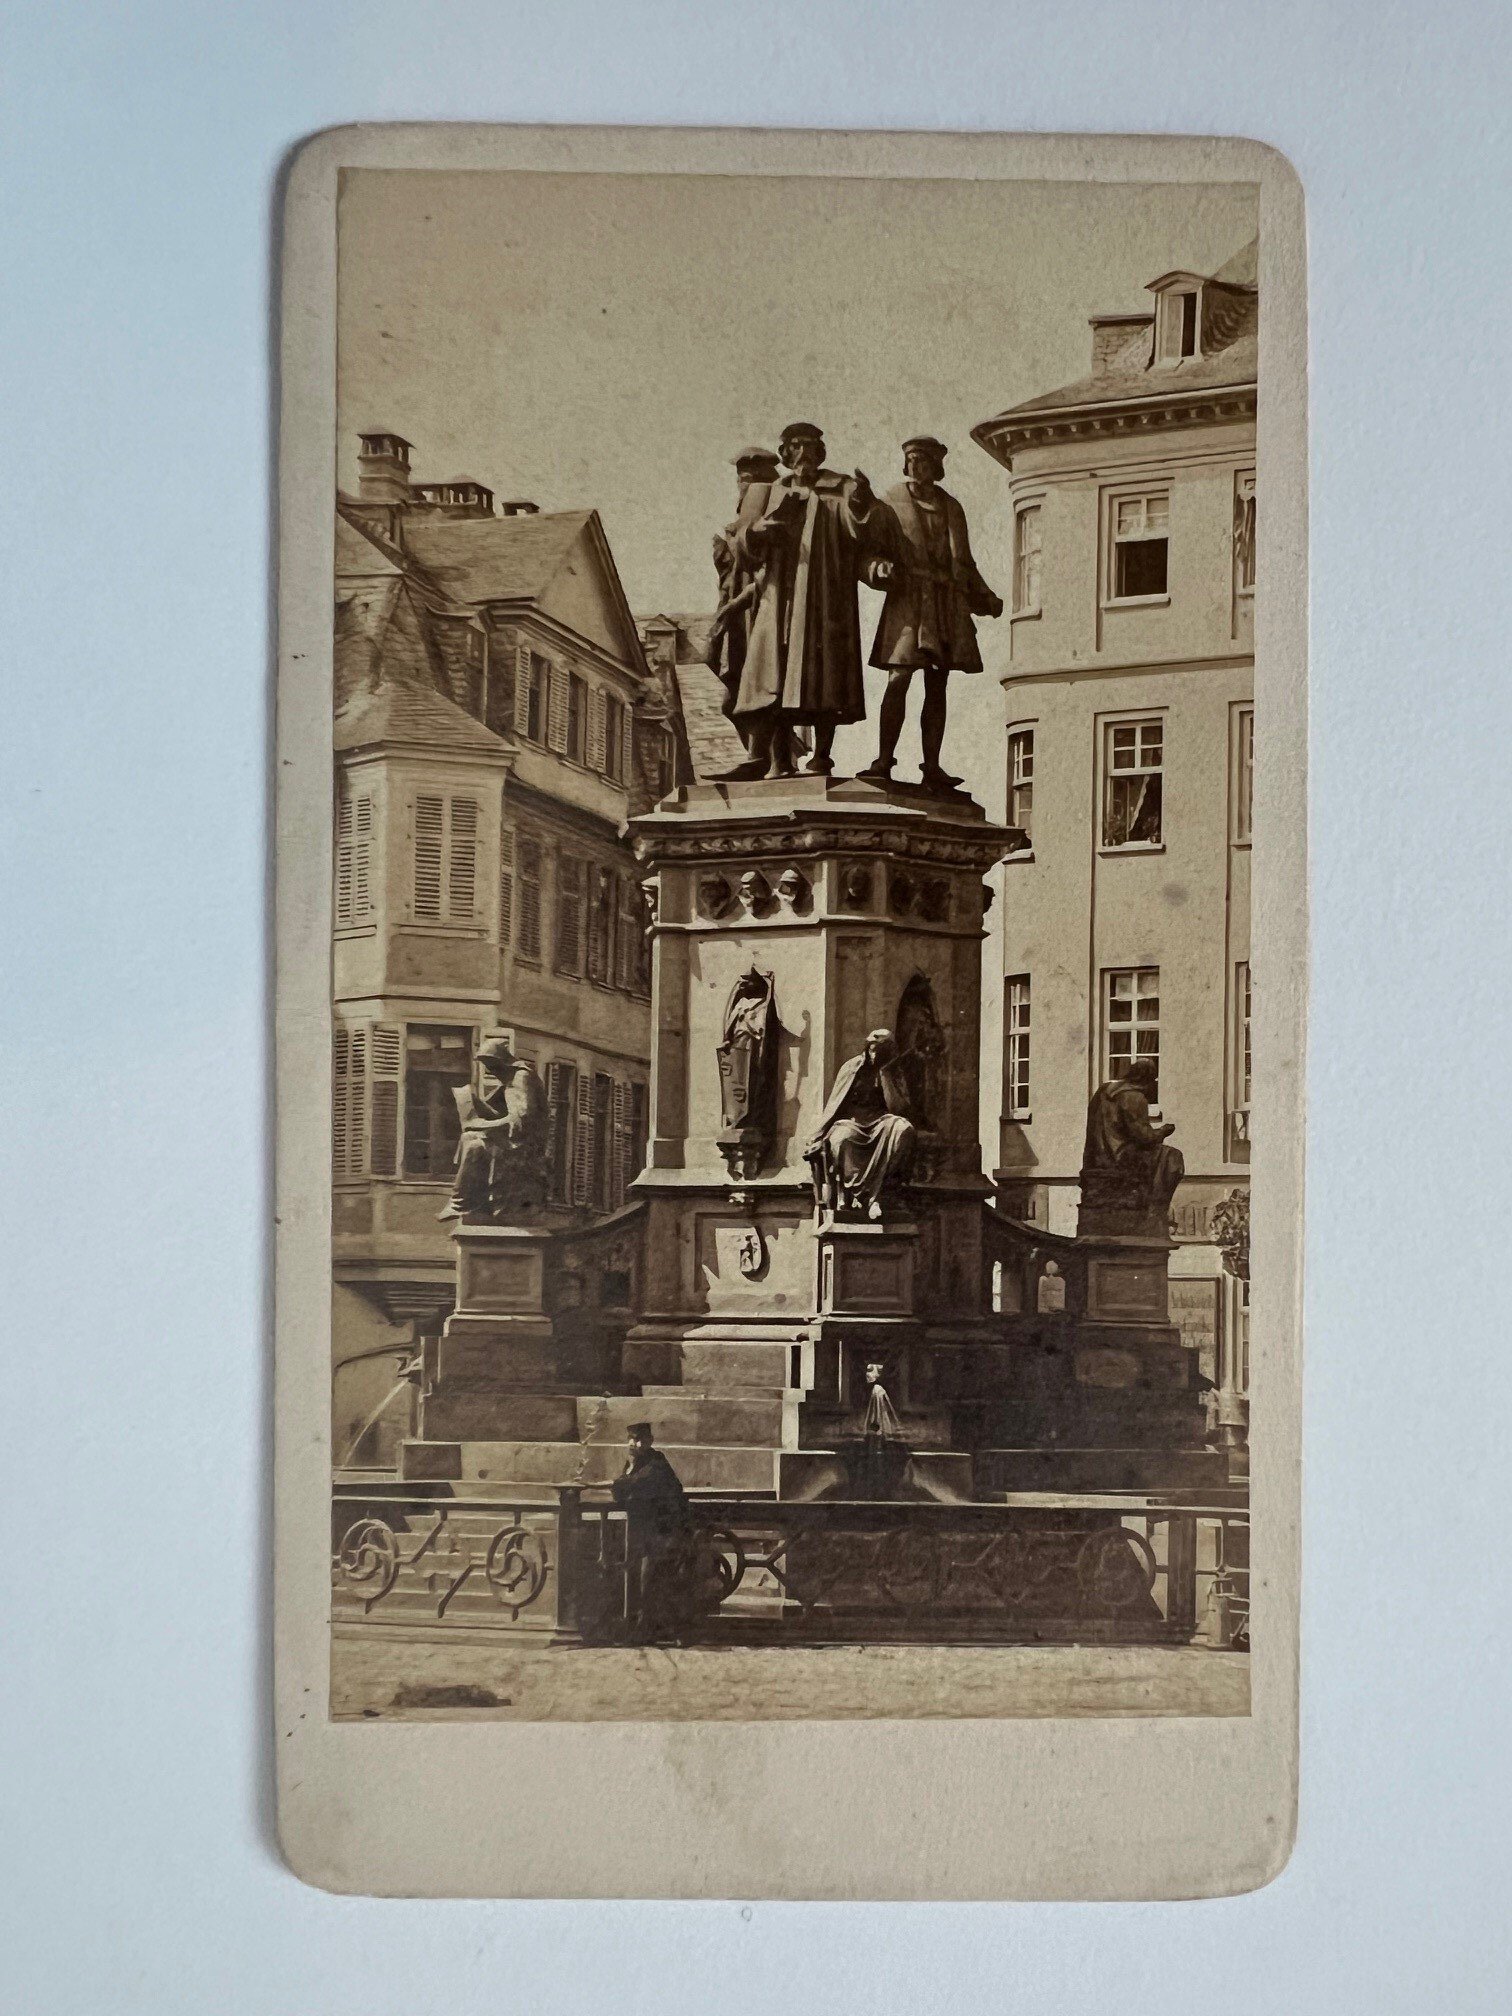 CdV, Unbekannter Fotograf, Frankfurt, Guttenberg-Denkmal, ca. 1865 (Taunus-Rhein-Main - Regionalgeschichtliche Sammlung Dr. Stefan Naas CC BY-NC-SA)